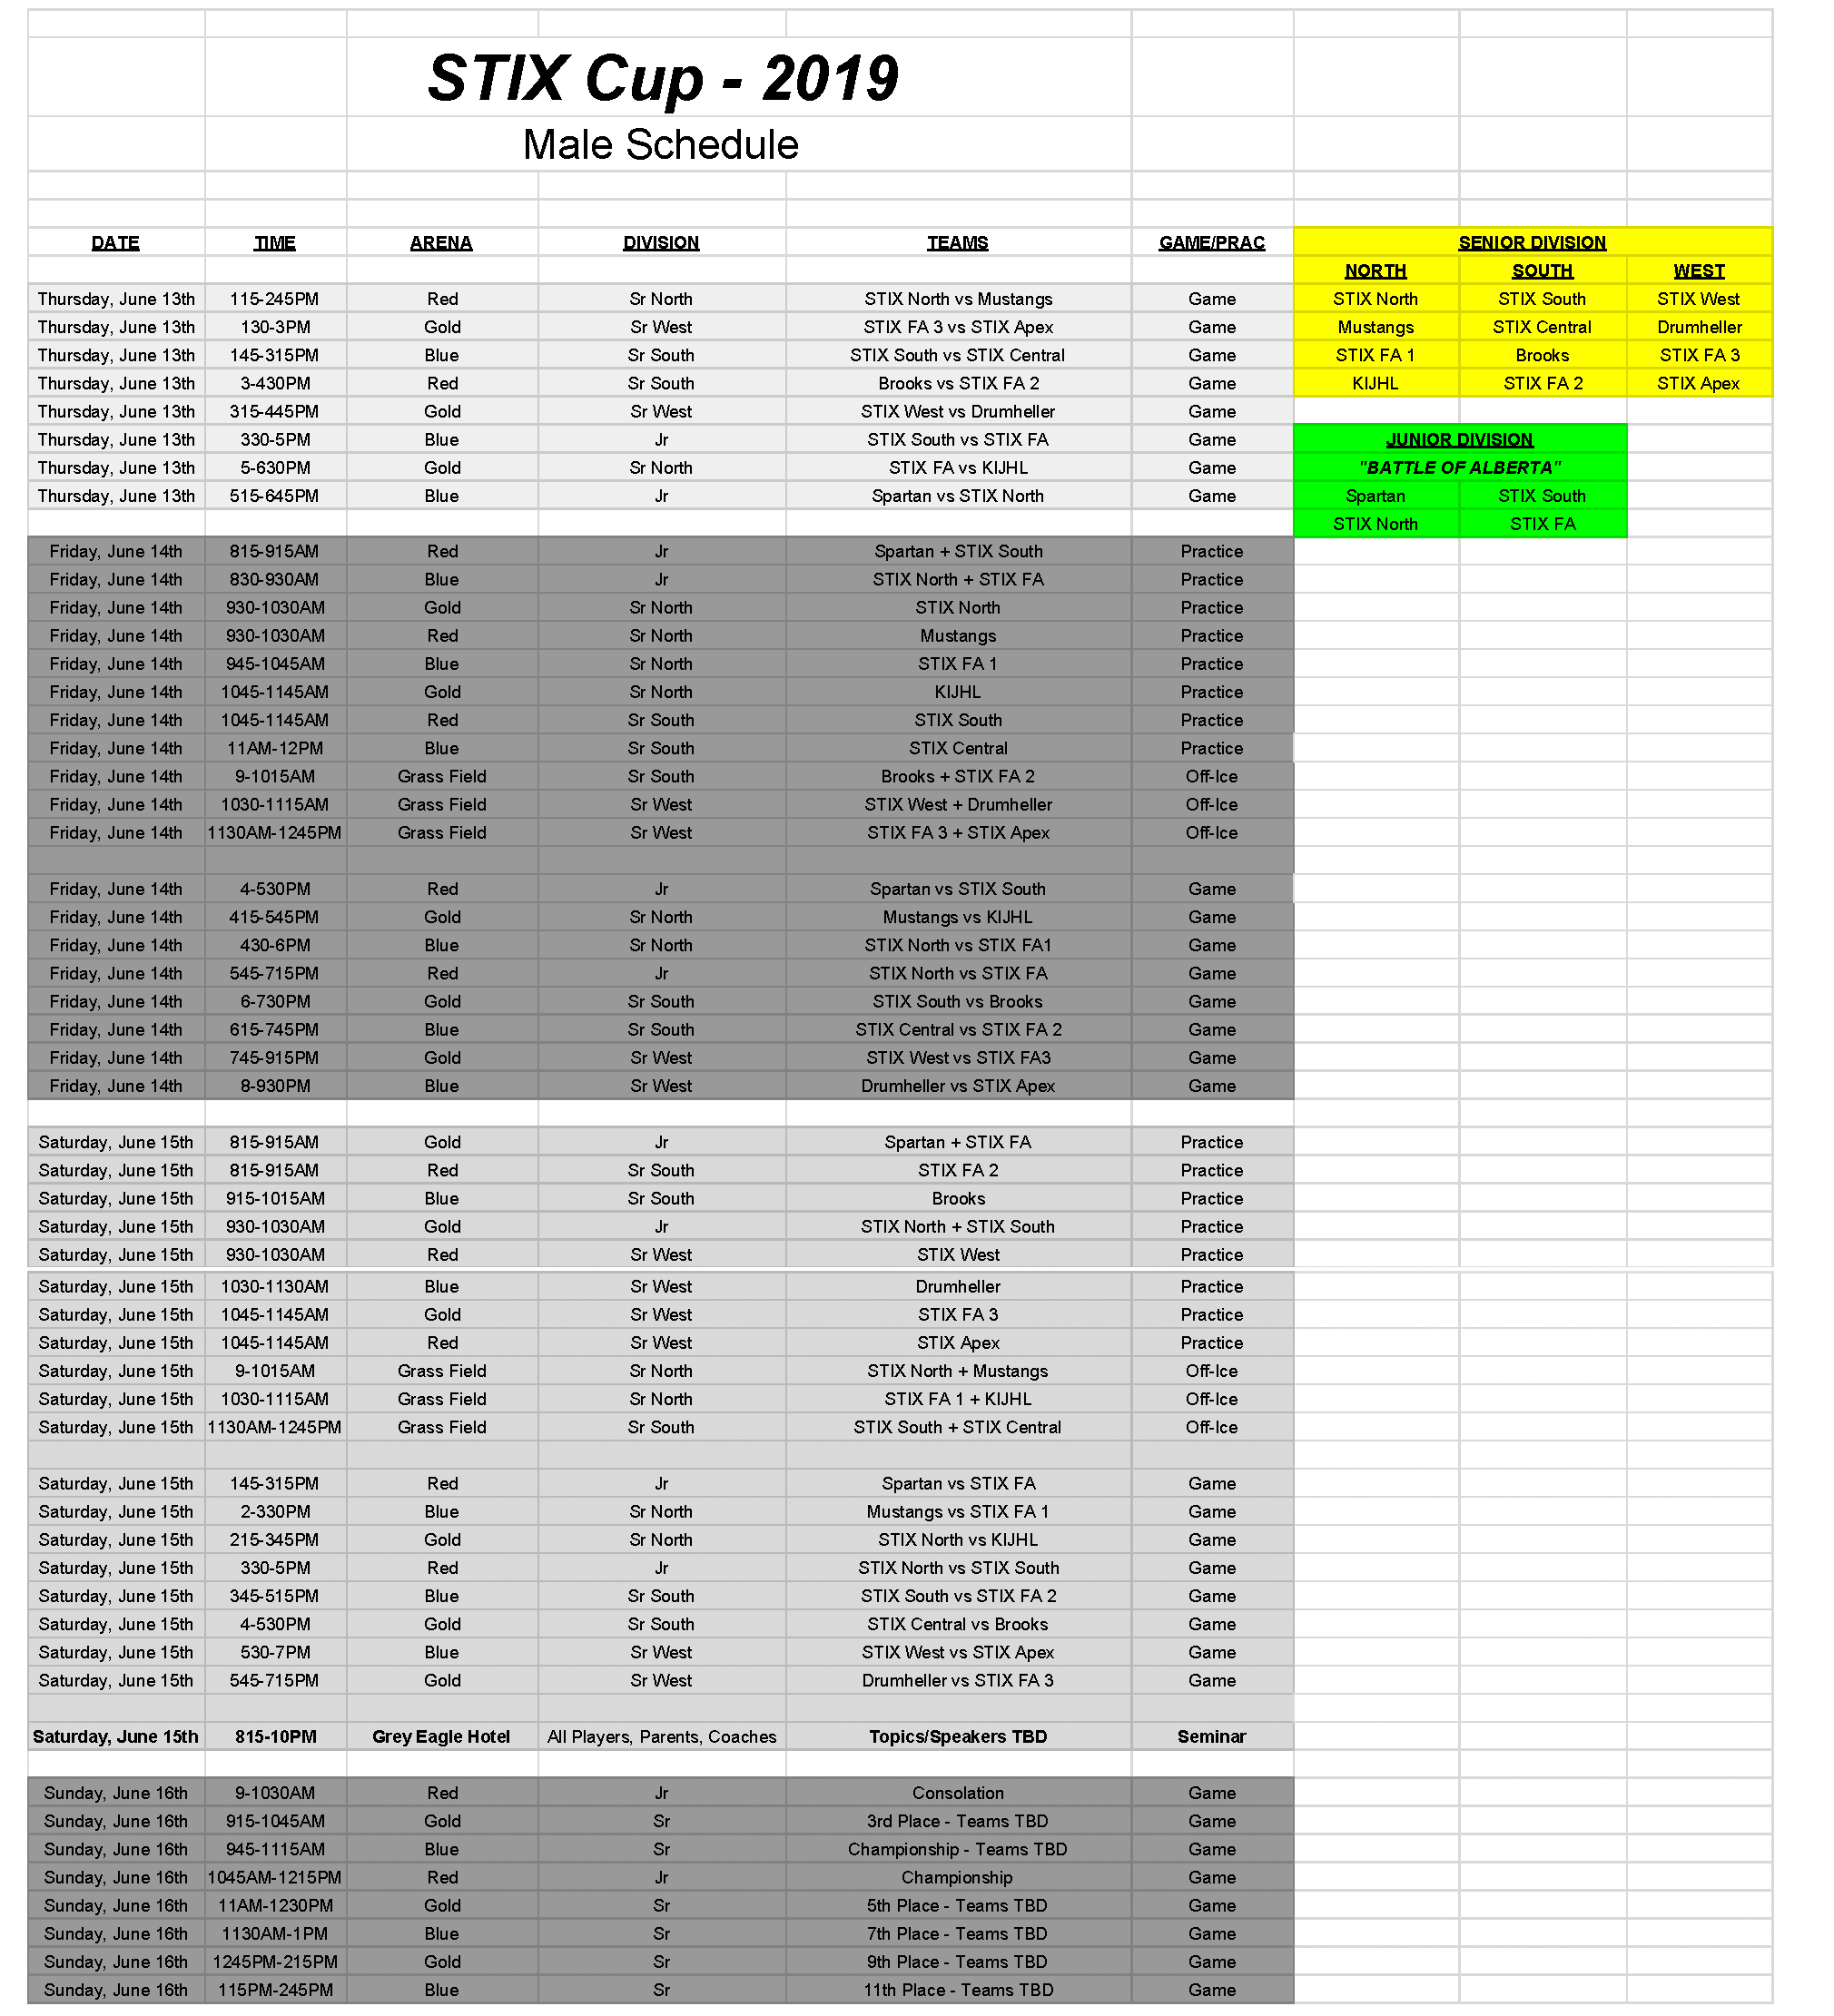 STIX Cup Schedule Males